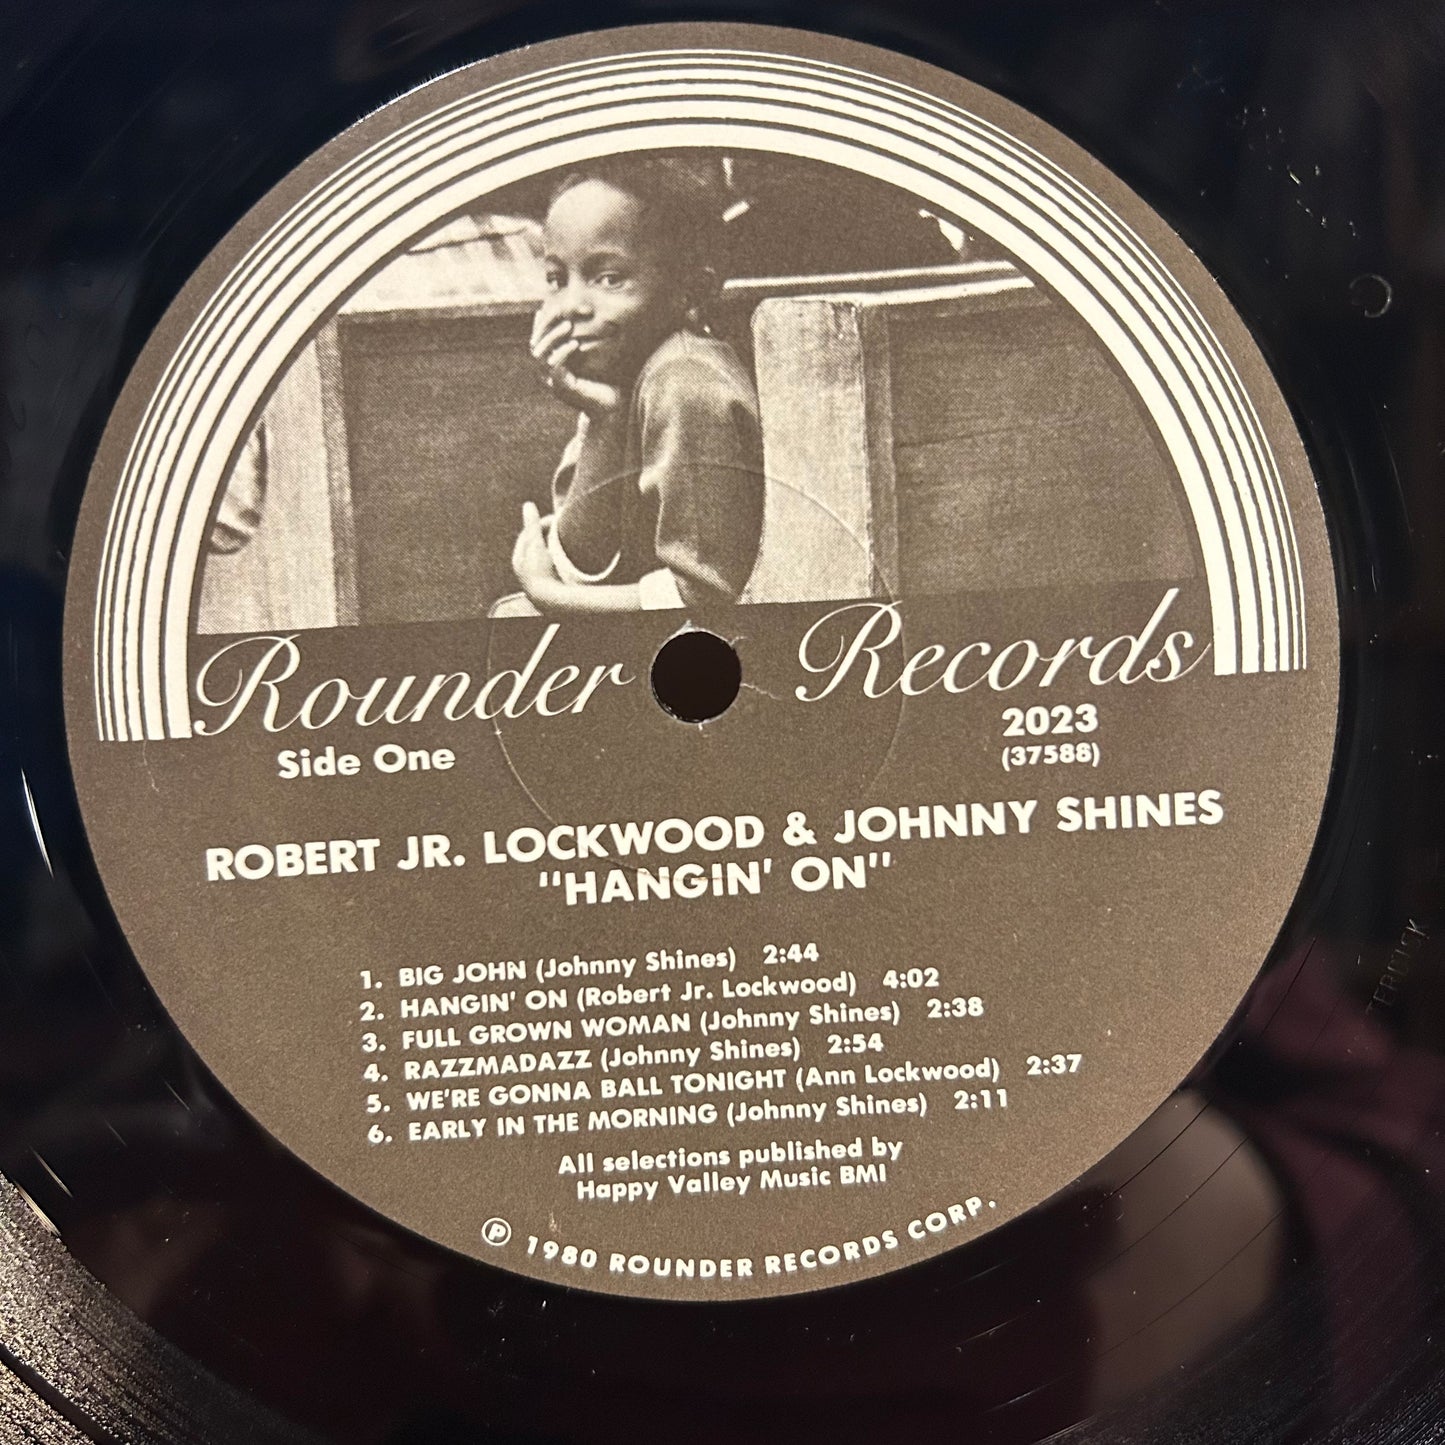 Robert Lockwood Jr. Hangin' On LP Near Mint (NM or M-) Near Mint (NM or M-)